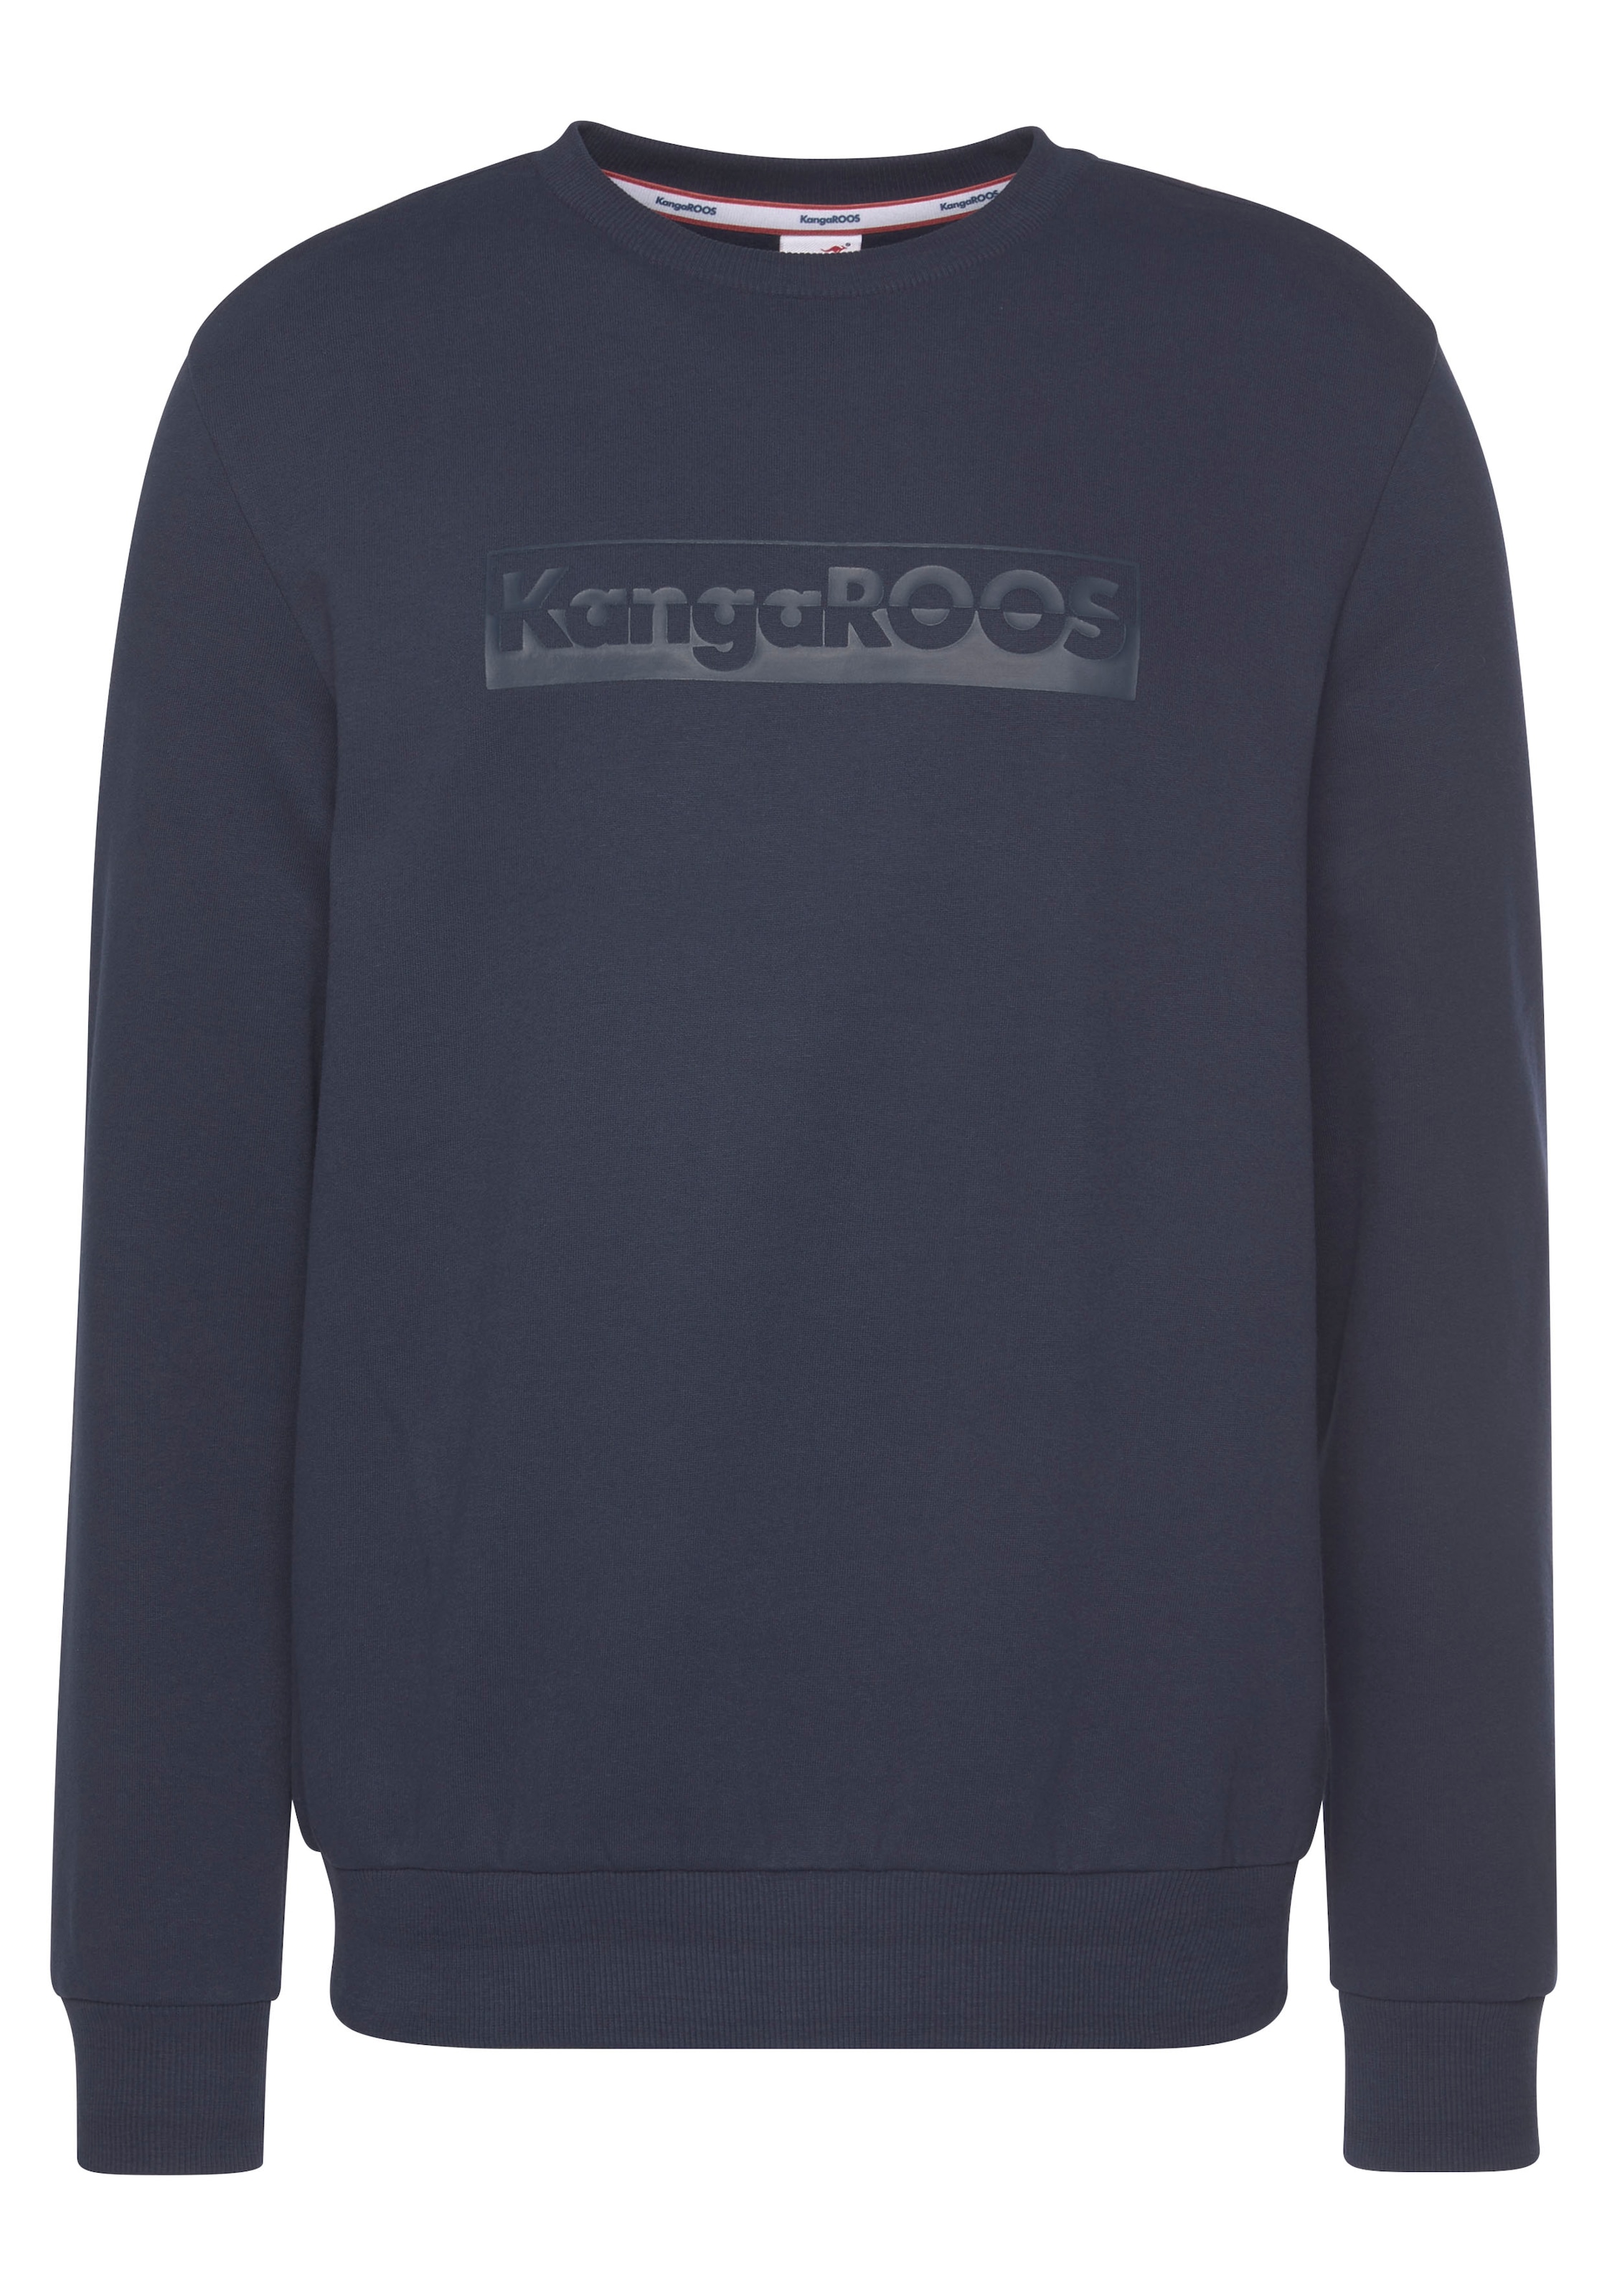 KangaROOS Sweatshirt, großem Logofrontprint mit